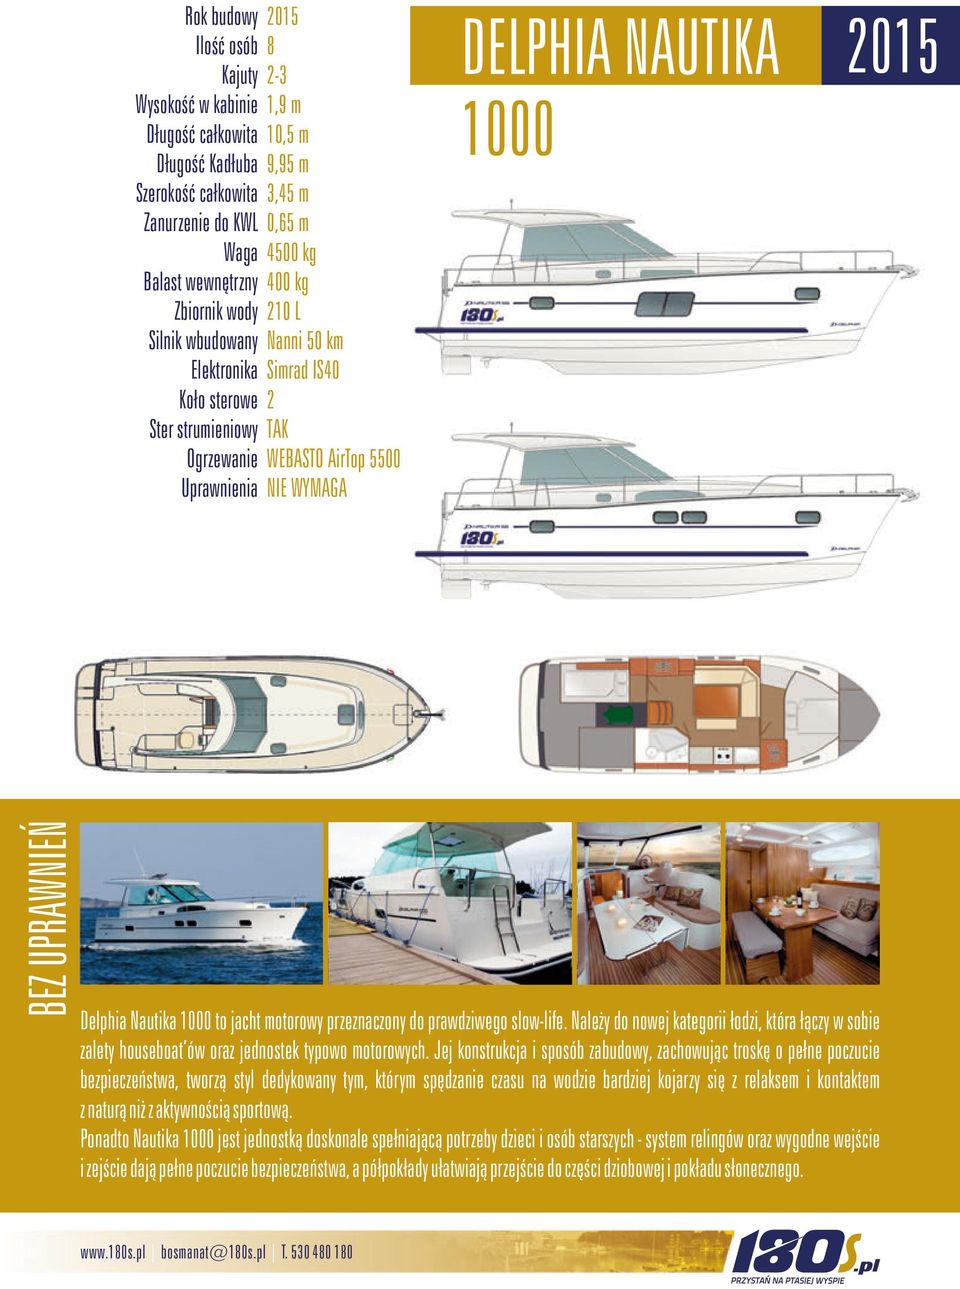 Delphia Nautika 1000 to jacht motorowy przeznaczony do prawdziwego slow-life. Należy do nowej kategorii łodzi, która łączy w sobie zalety houseboat ów oraz jednostek typowo motorowych.